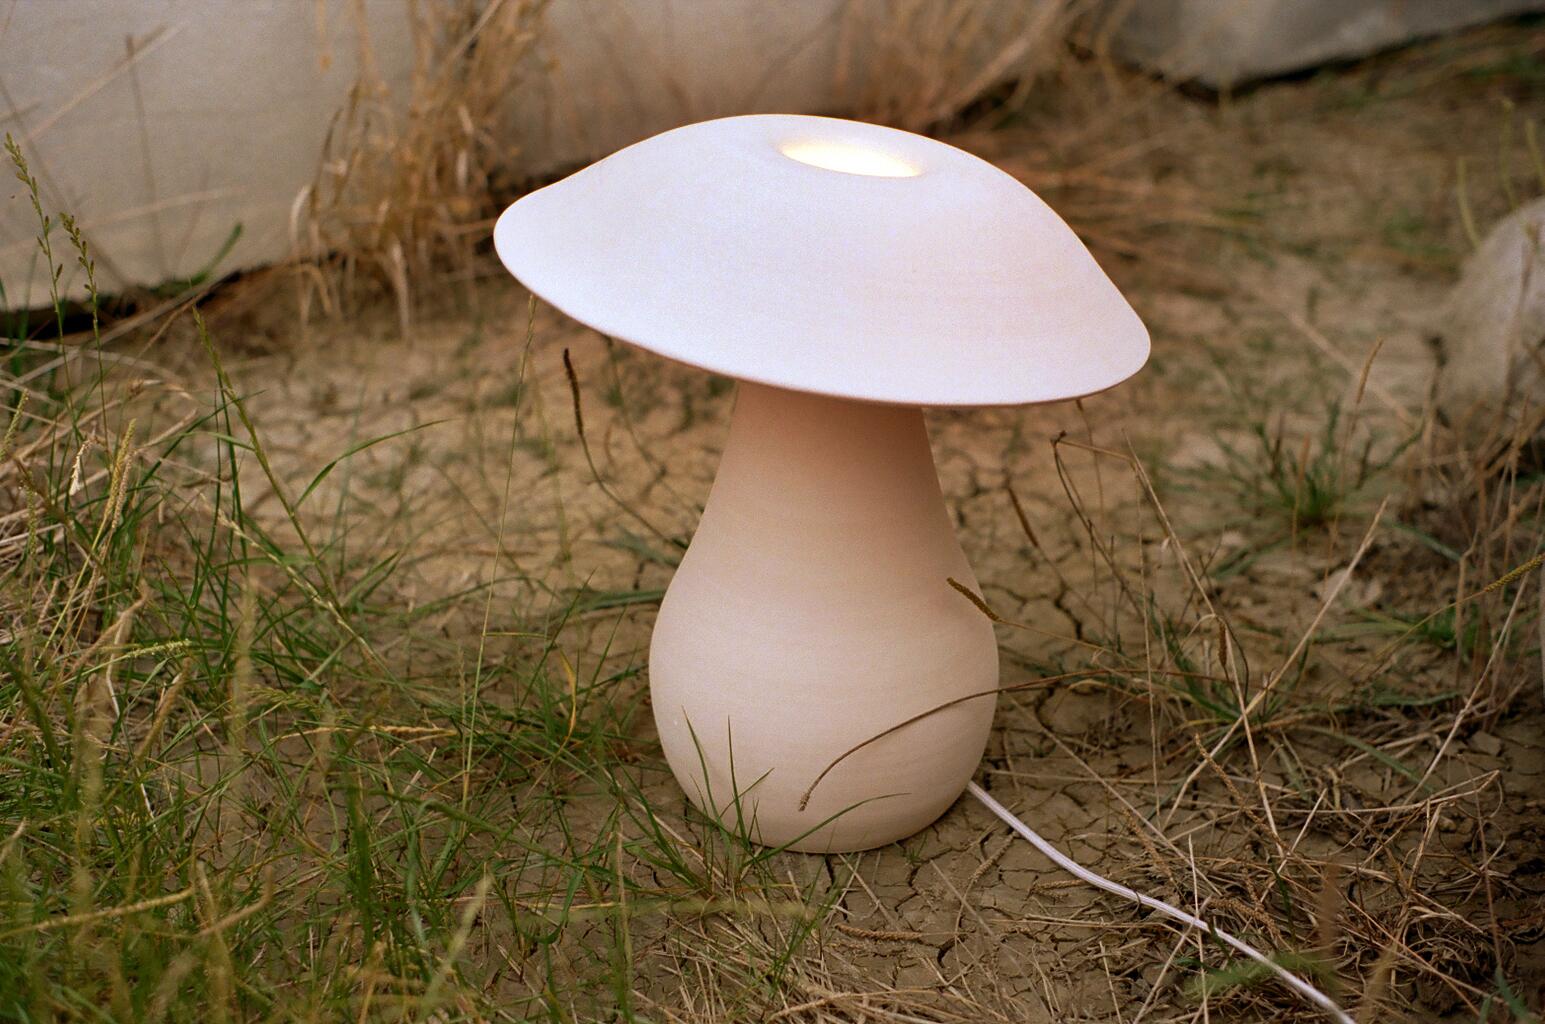 Petite lampe champignon de Nick Pourfard
Dimensions : Ø 33 x H 38 cm : Ø 33 x H 38 cm.
Matériaux : céramique.
Différentes finitions disponibles. Veuillez nous contacter.

Toutes nos lampes peuvent être câblées en fonction de chaque pays. Si elle est